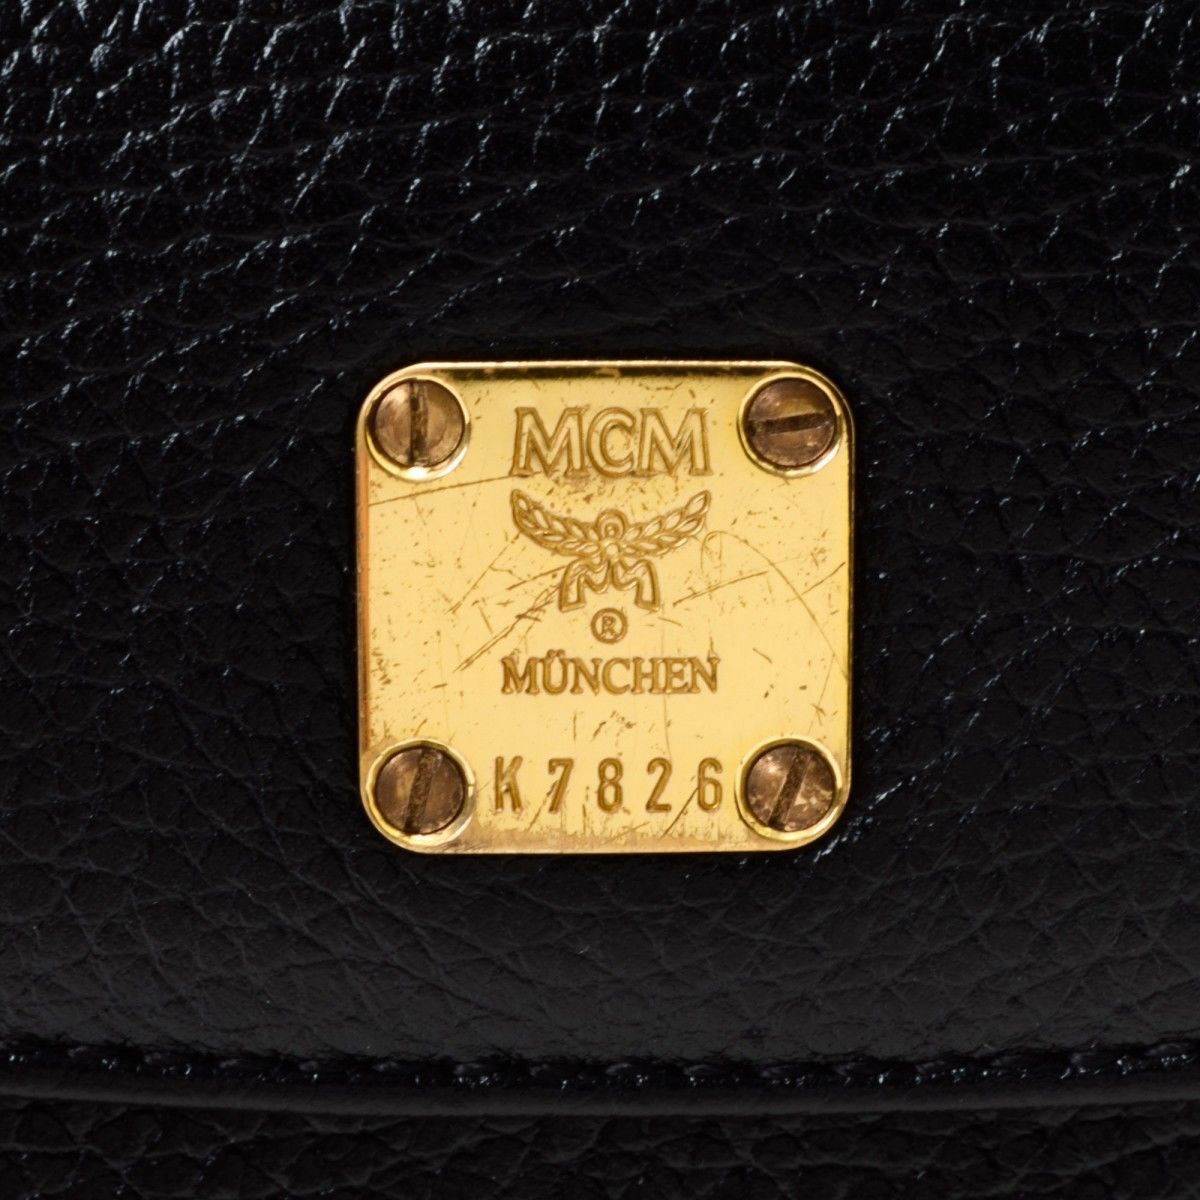 Mcm Bag Serial Number